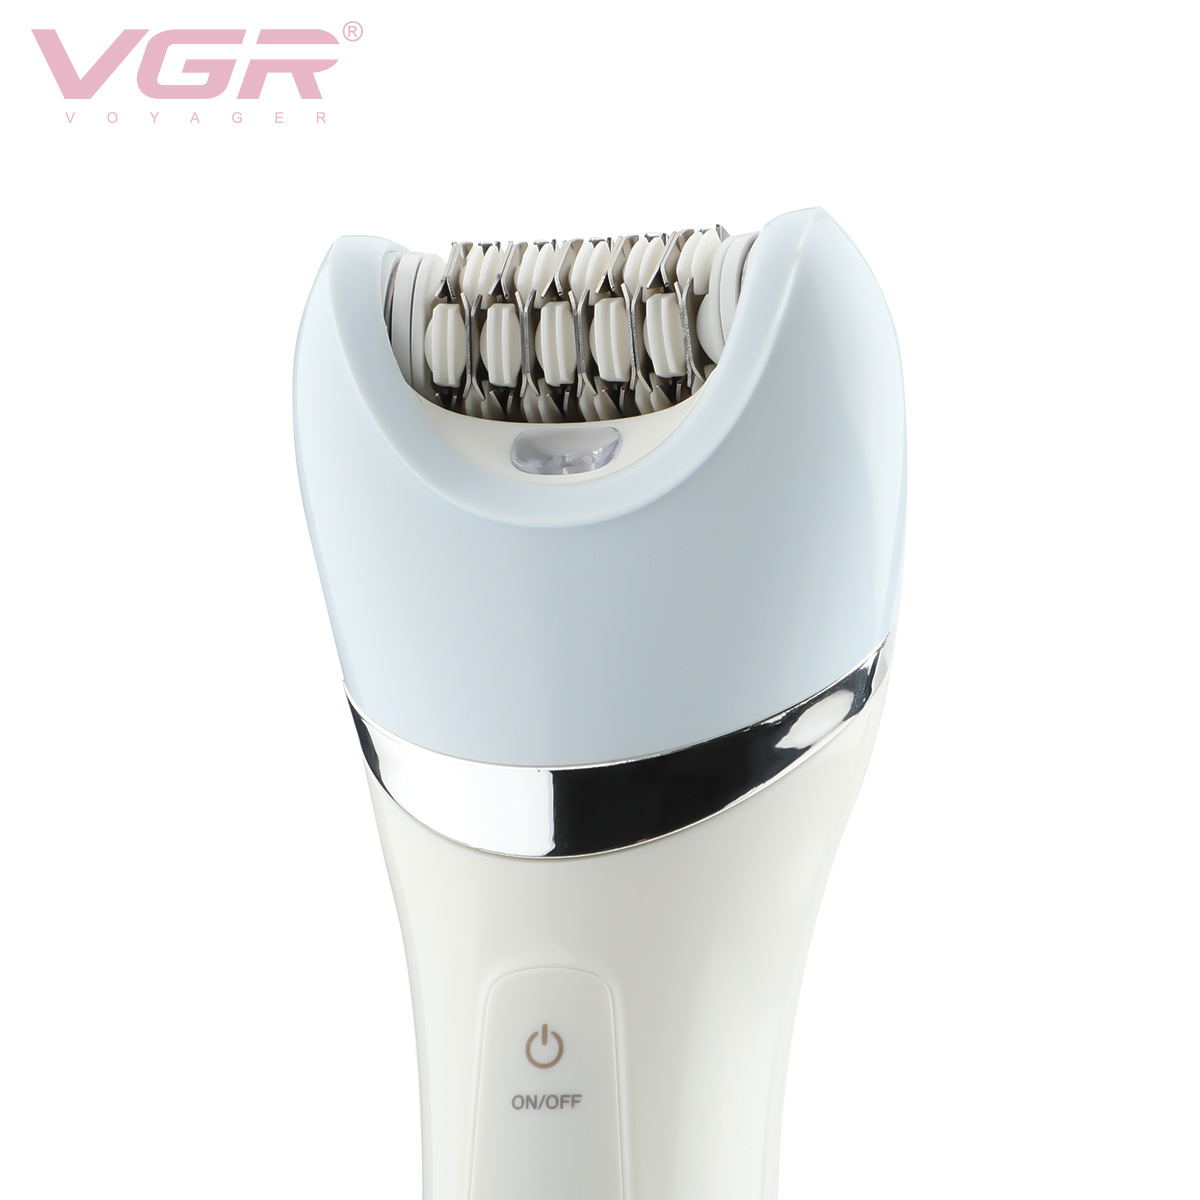 Hình ảnh Máy cạo lông điện VGR Voyager V-703 đa năng 5 Trong 1 chống thấm nước với 2 tốc độ sử dụng - Hàng nhập khẩu